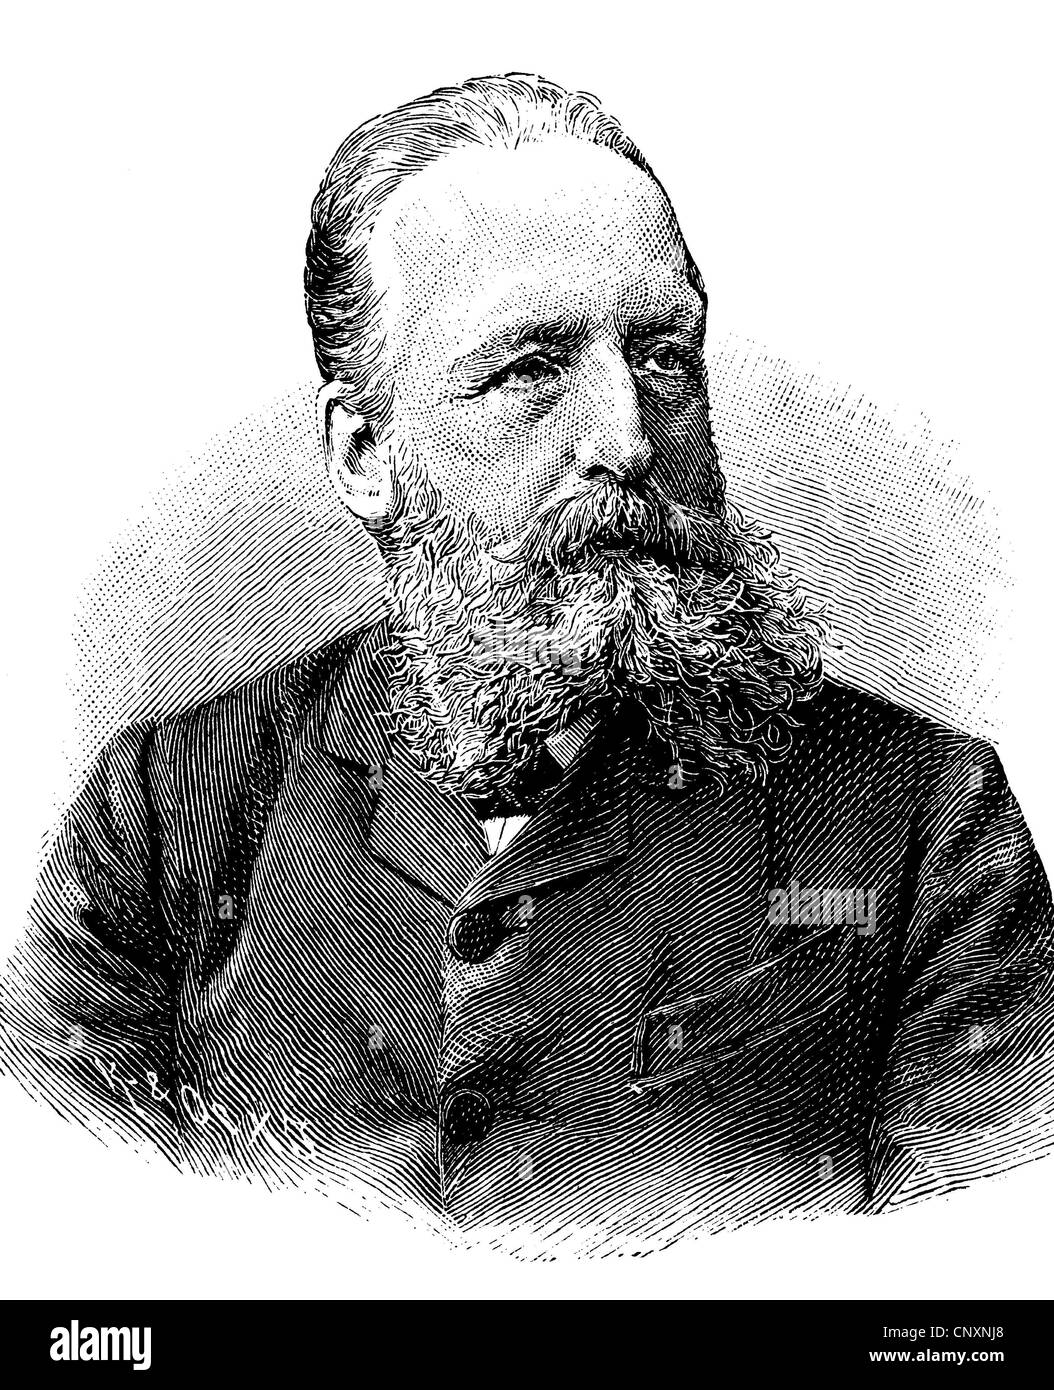 Ernst Catenhusen, né en 1841, un orchestre de l'opéra historique, gravure, 1883 Banque D'Images